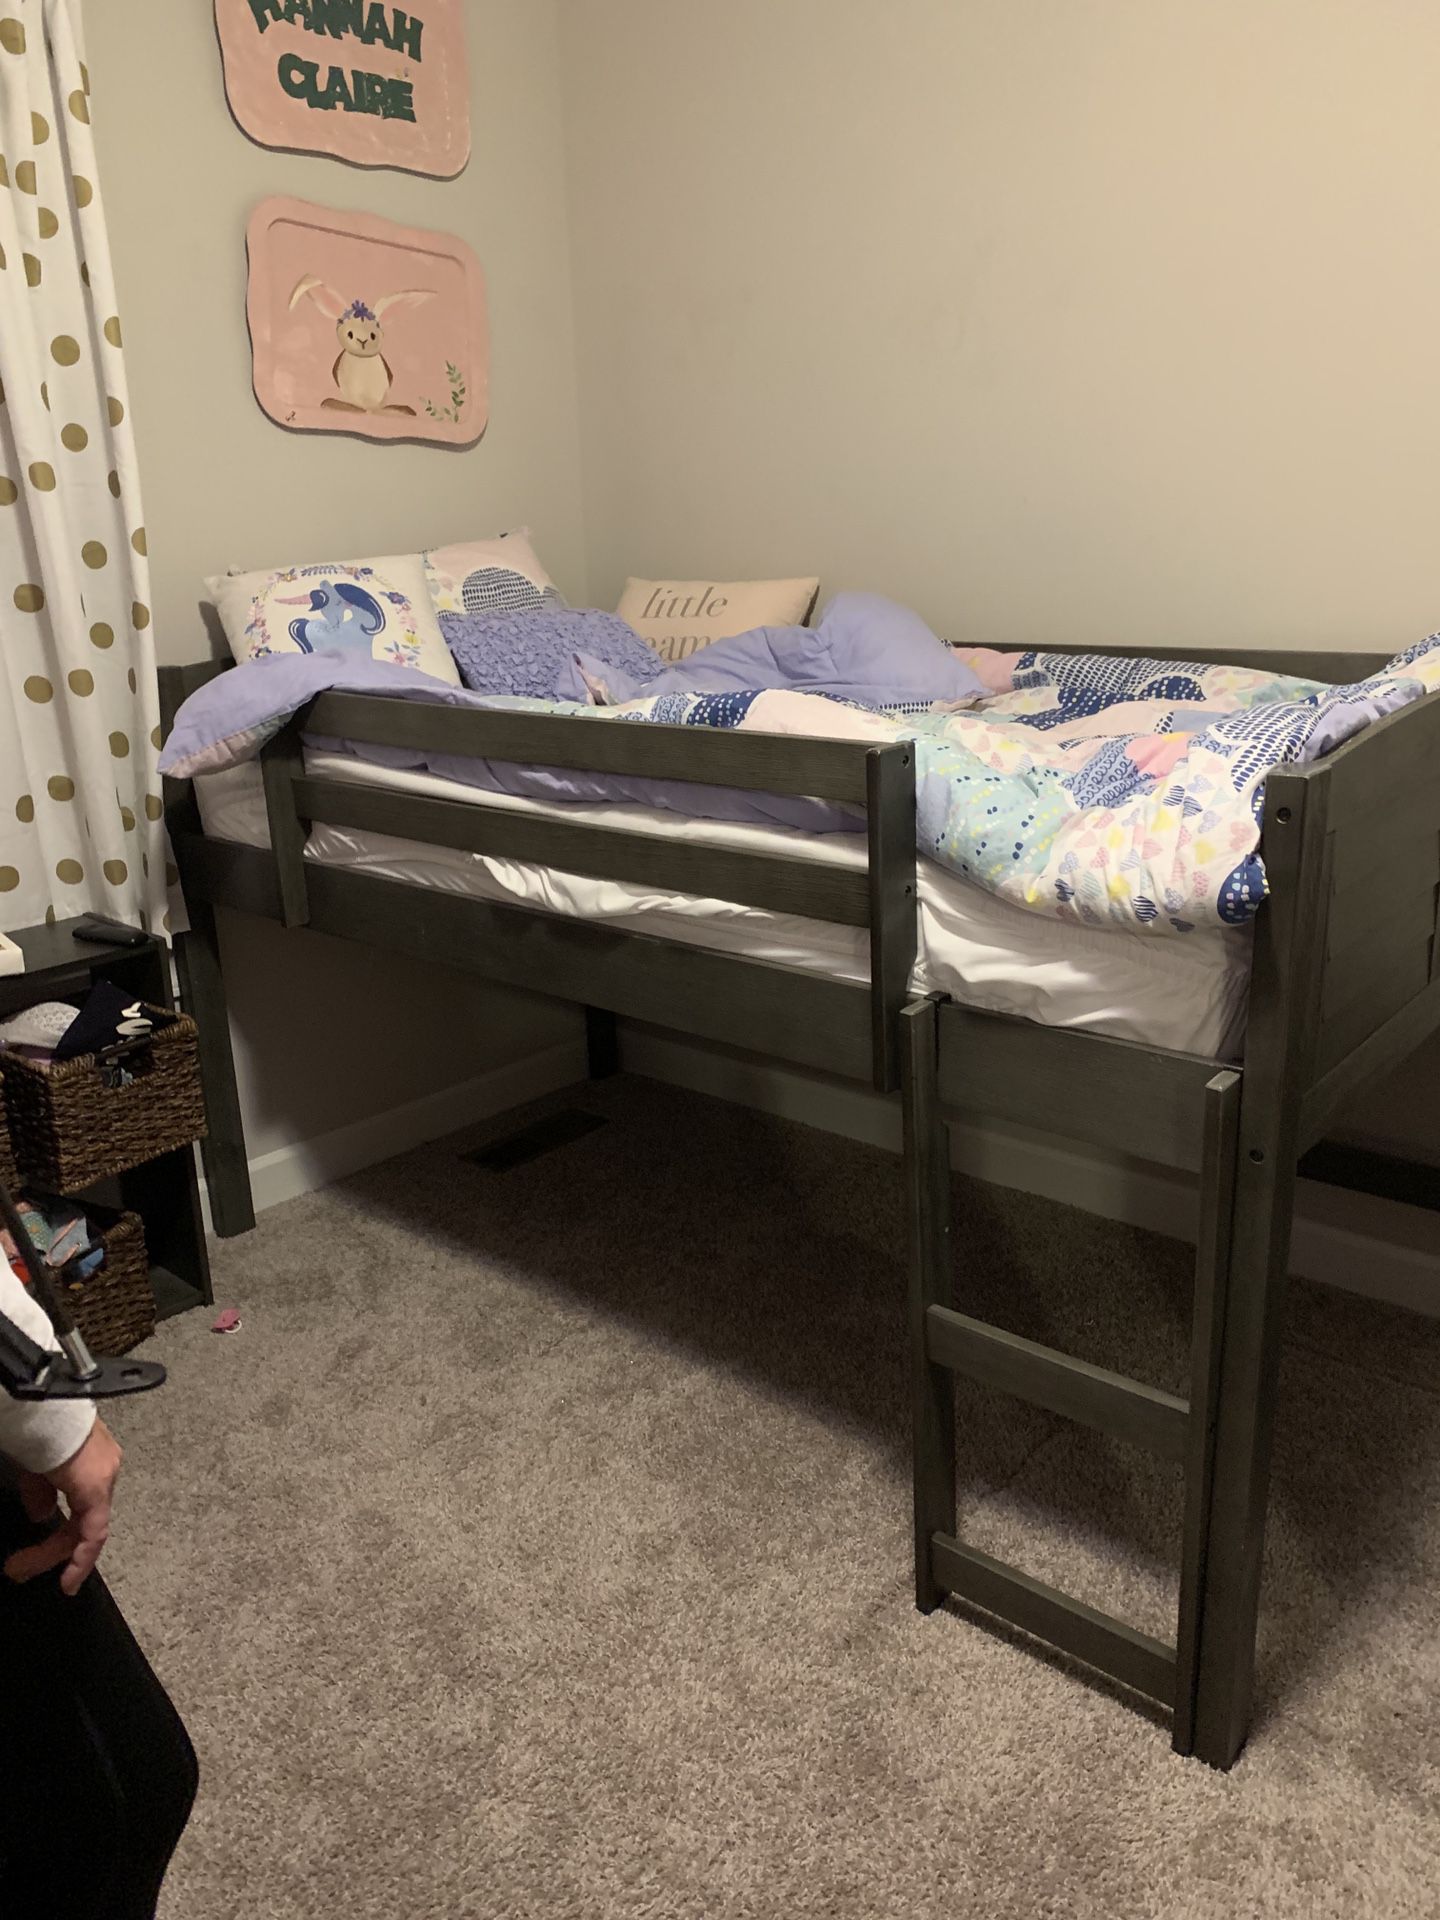 Ashley’s Raised Kids Bed With Dresser/storage